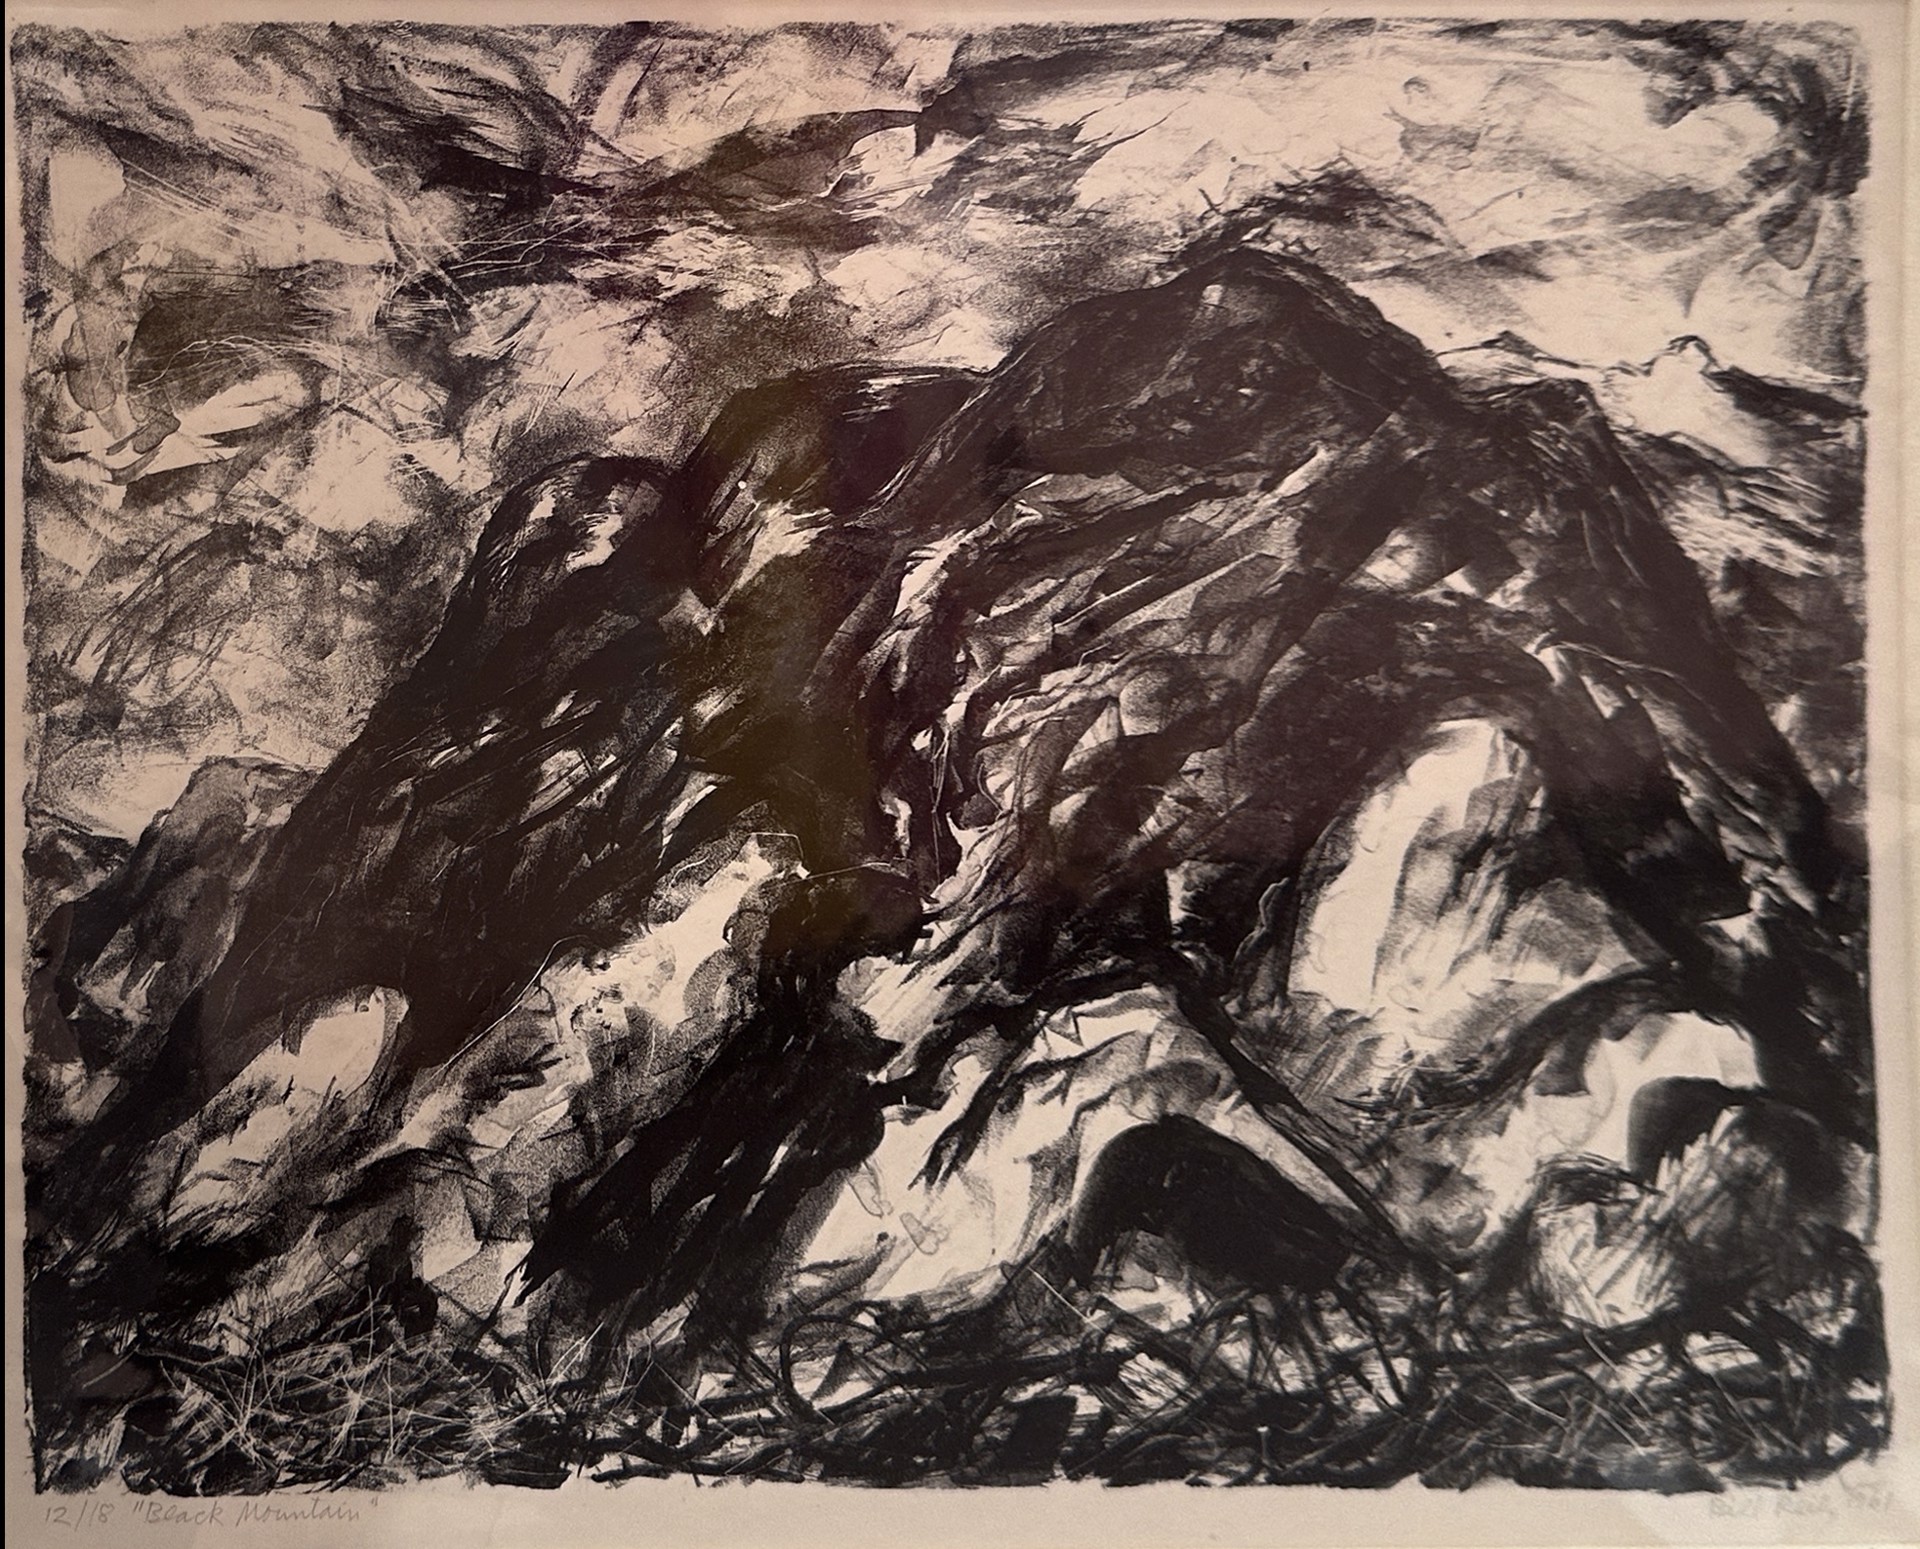 78. Black Mountain by Bill Reily - Prints